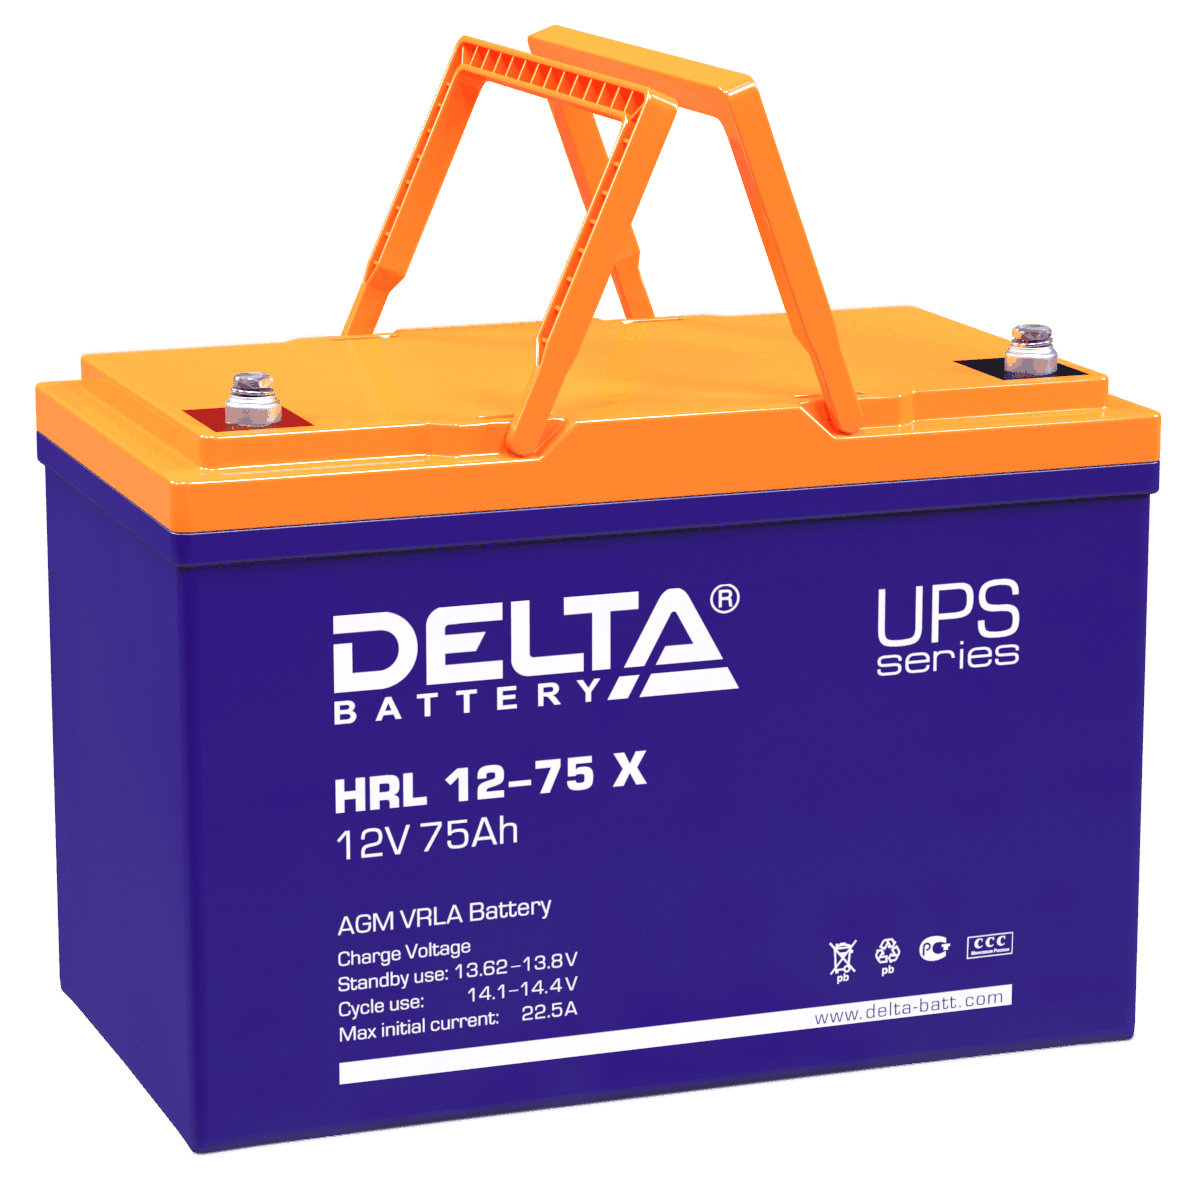 Все Батареи DELTA HRL 12-75 X видеонаблюдения в магазине Vidos Group